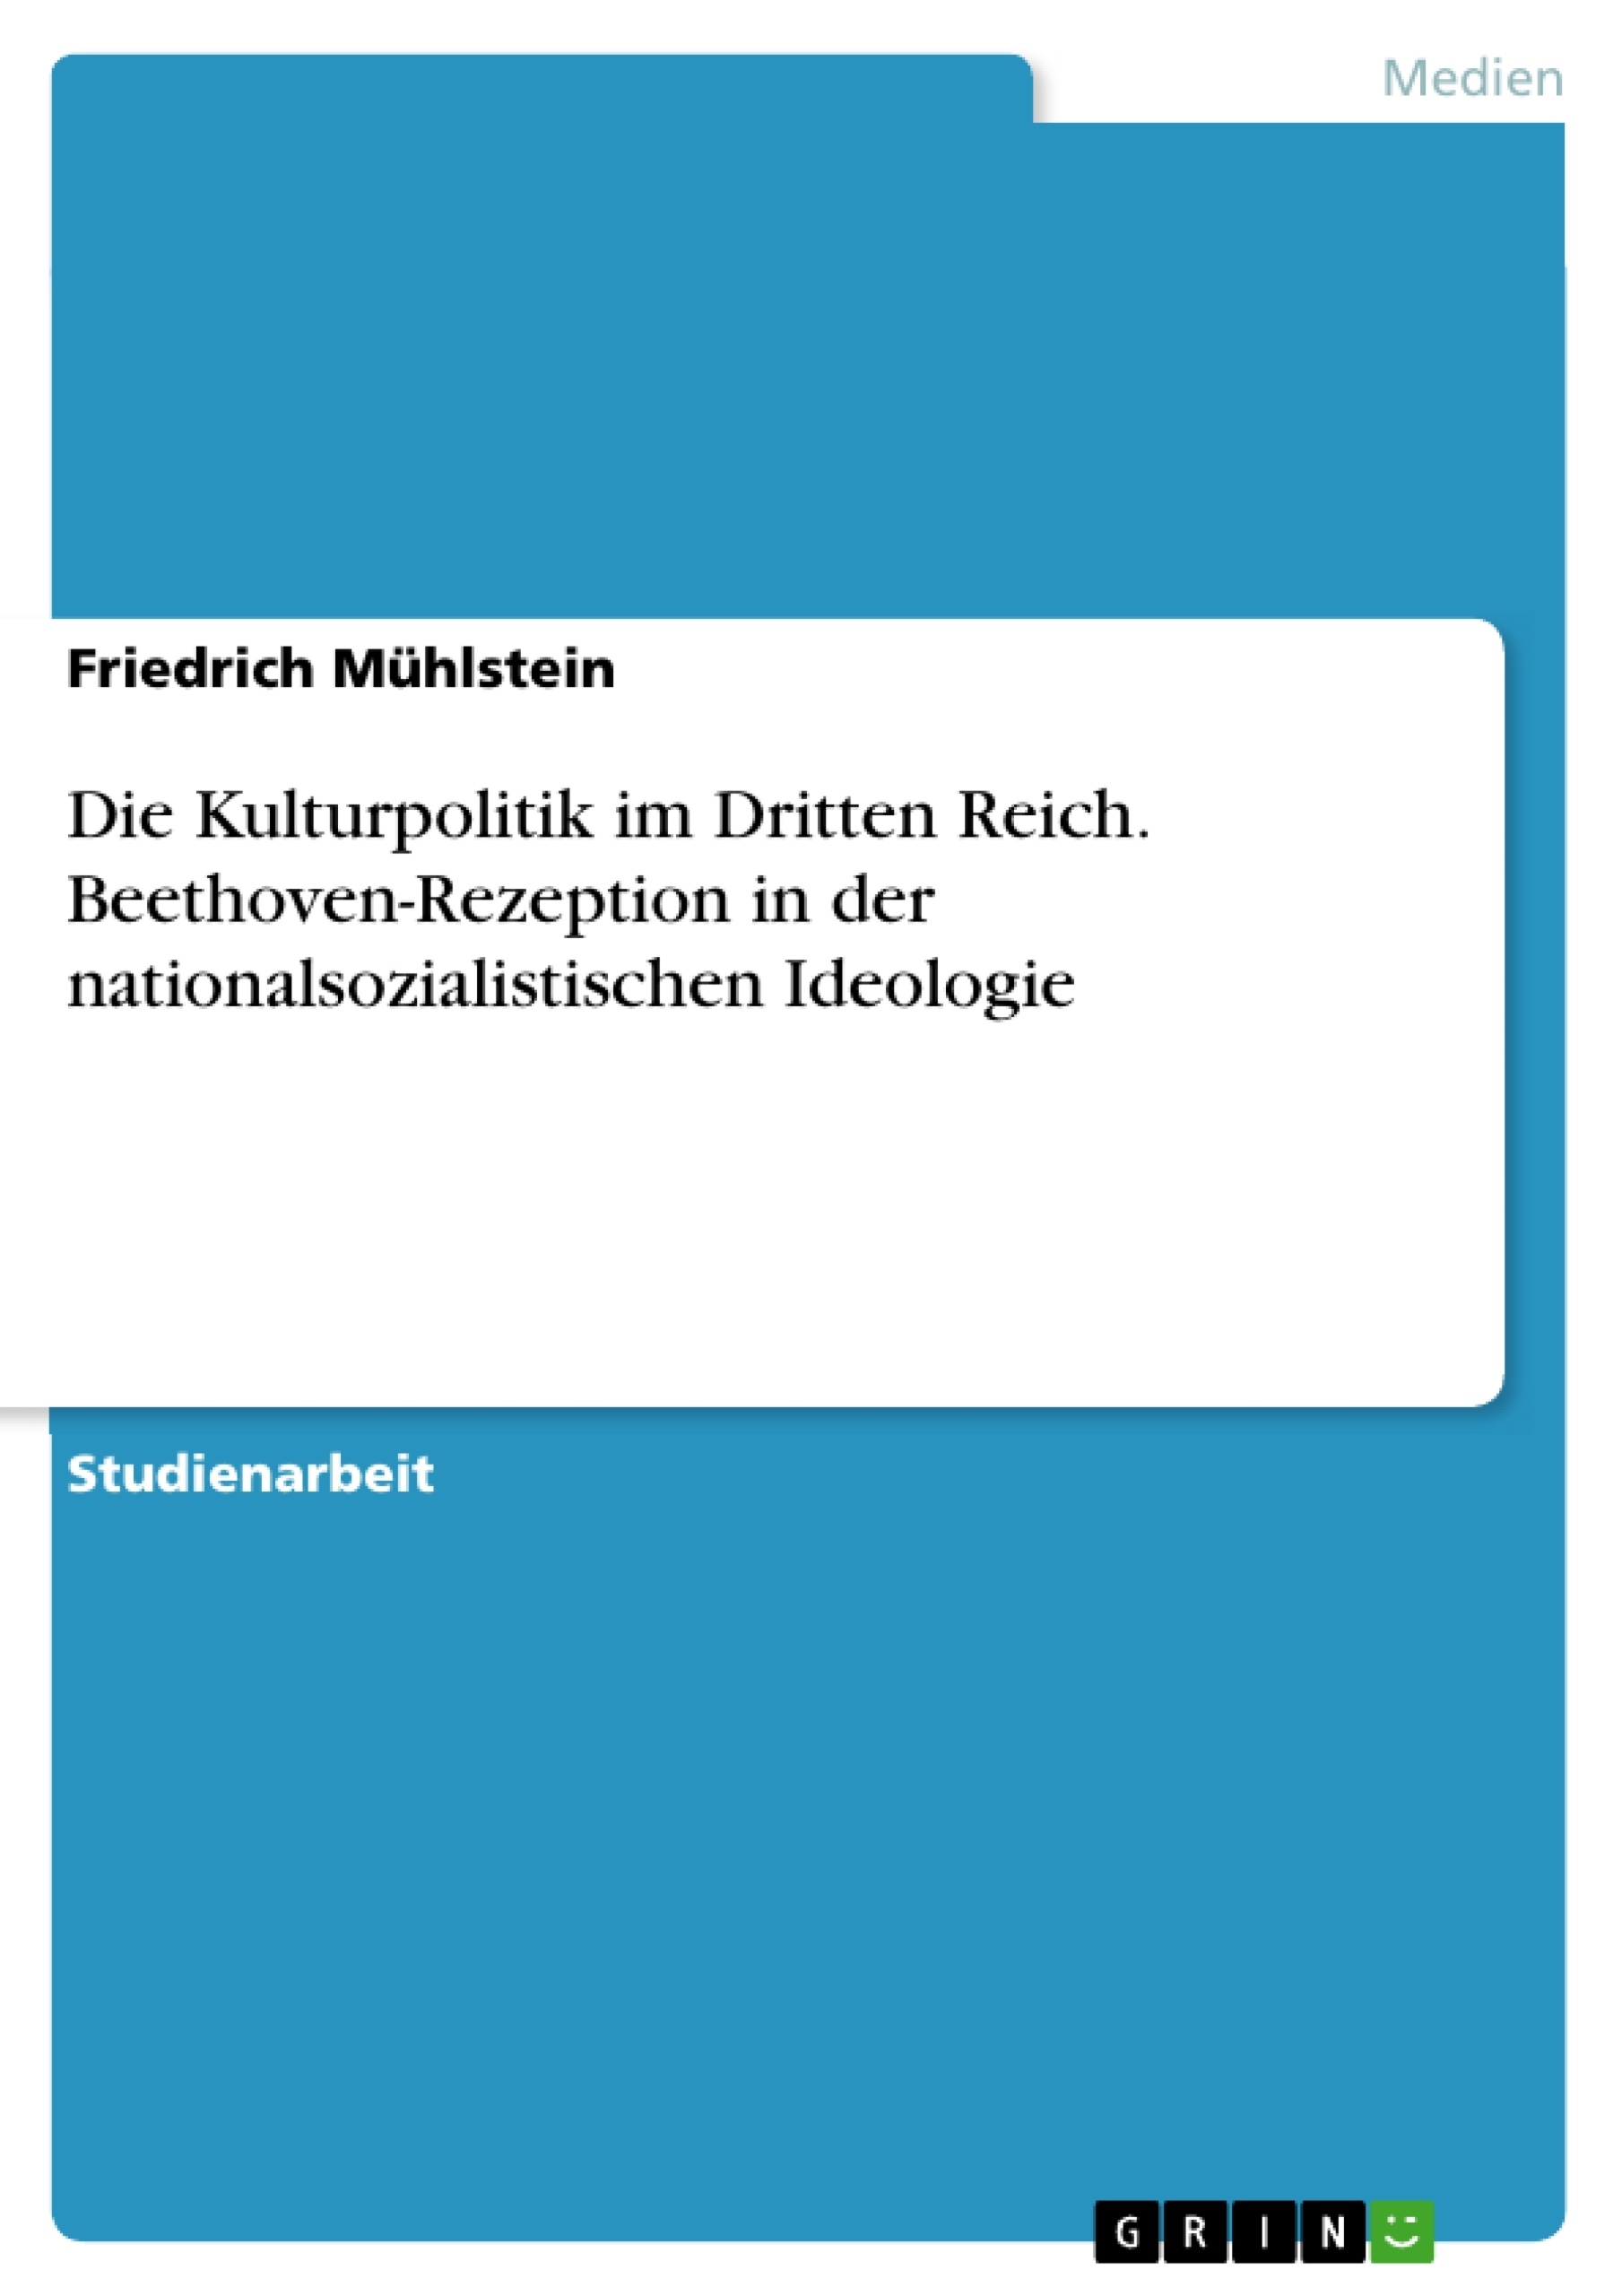 Title: Die Kulturpolitik im Dritten Reich. Beethoven-Rezeption in der nationalsozialistischen Ideologie